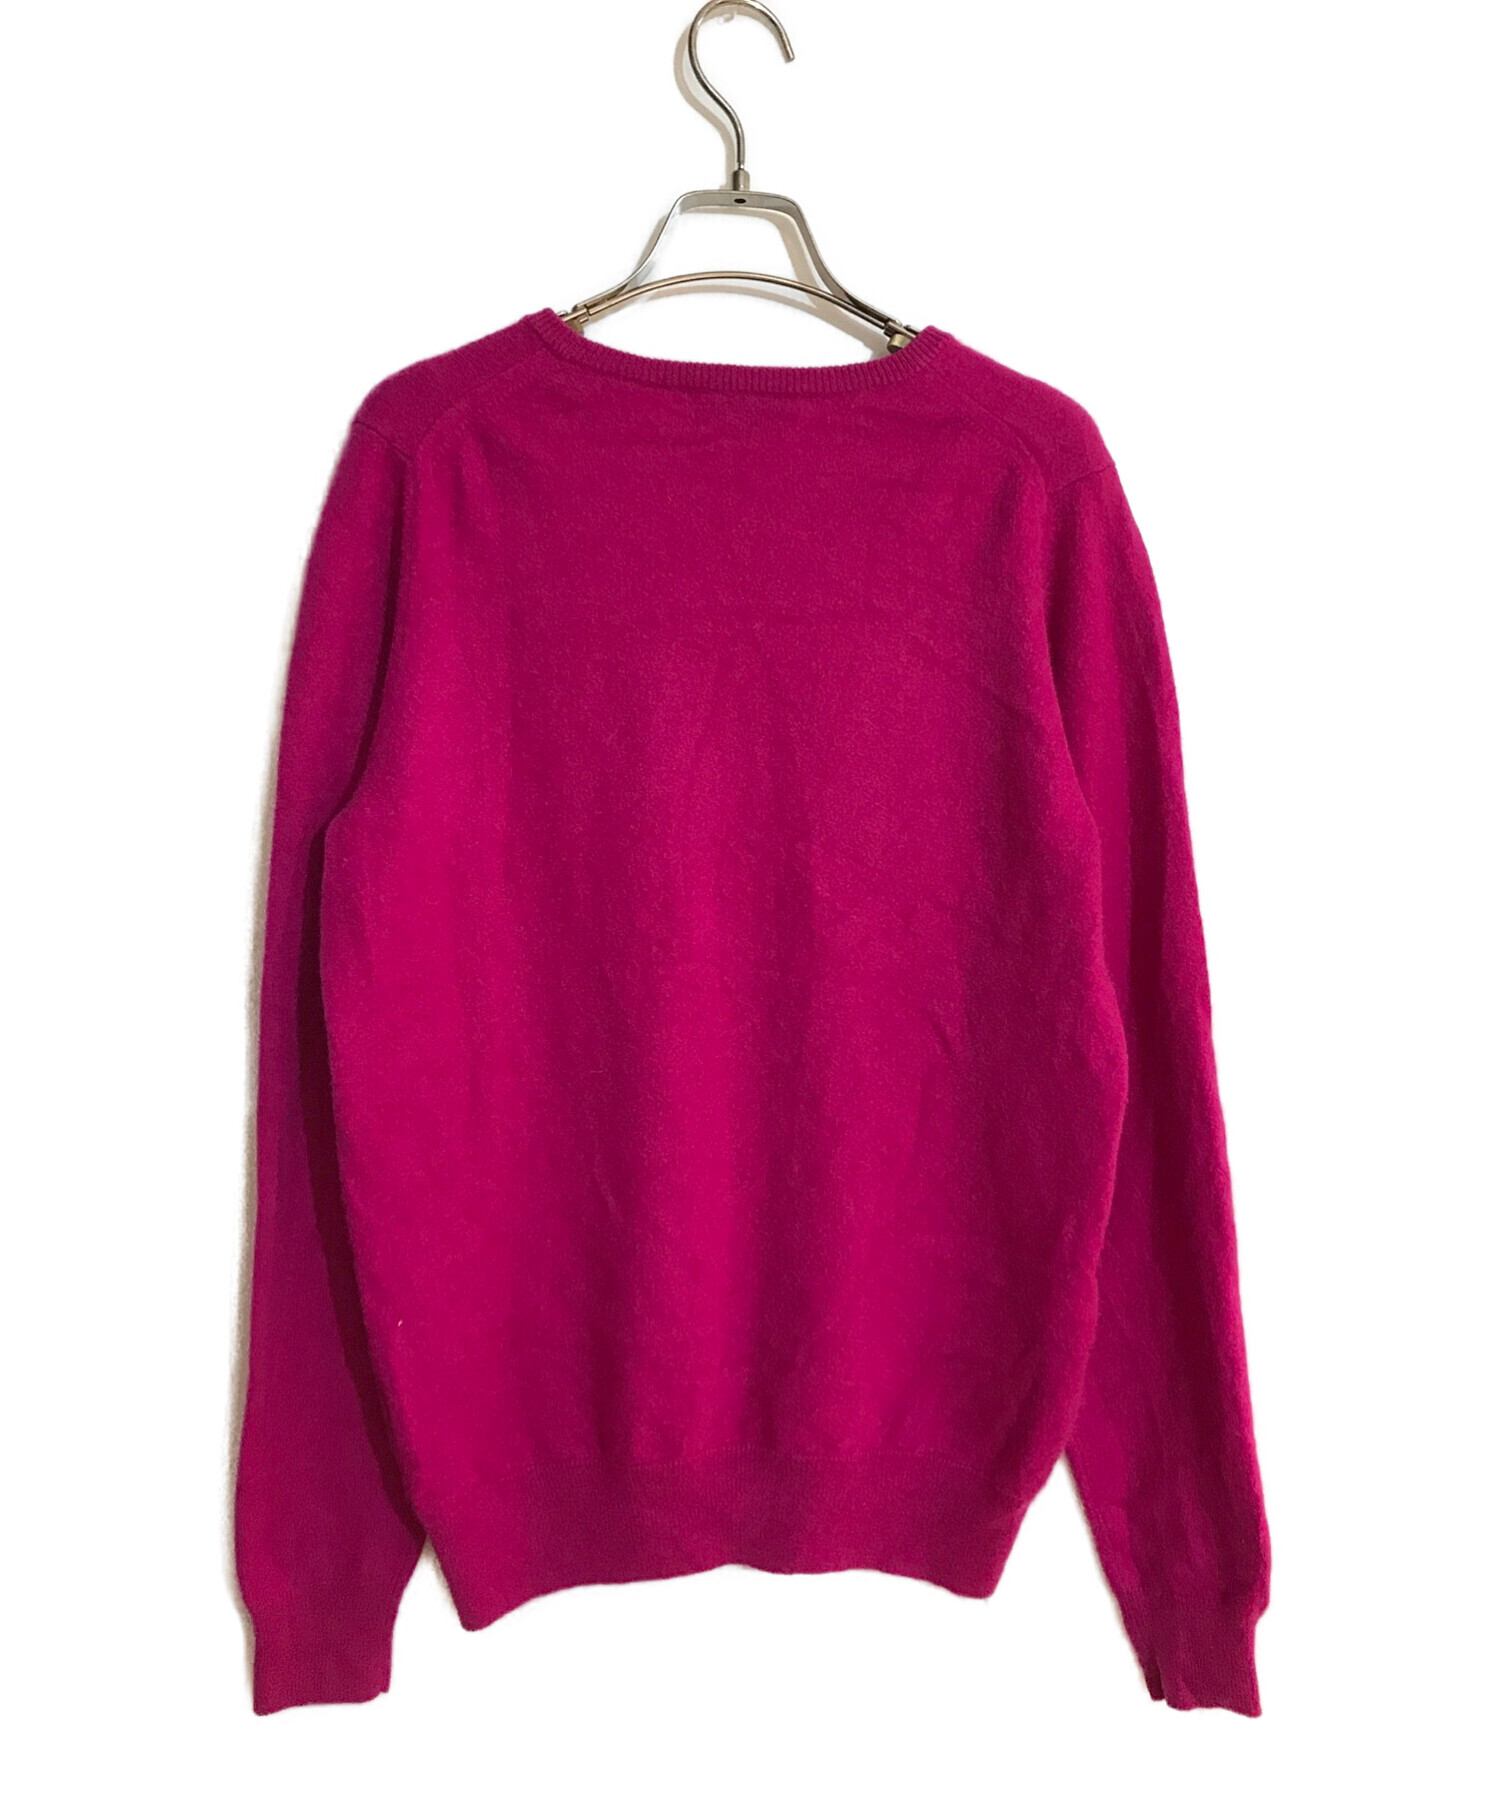 KOLOR (カラー) Uneven パッチ セーター/アンイーブンパッチセーター ピンク サイズ:3